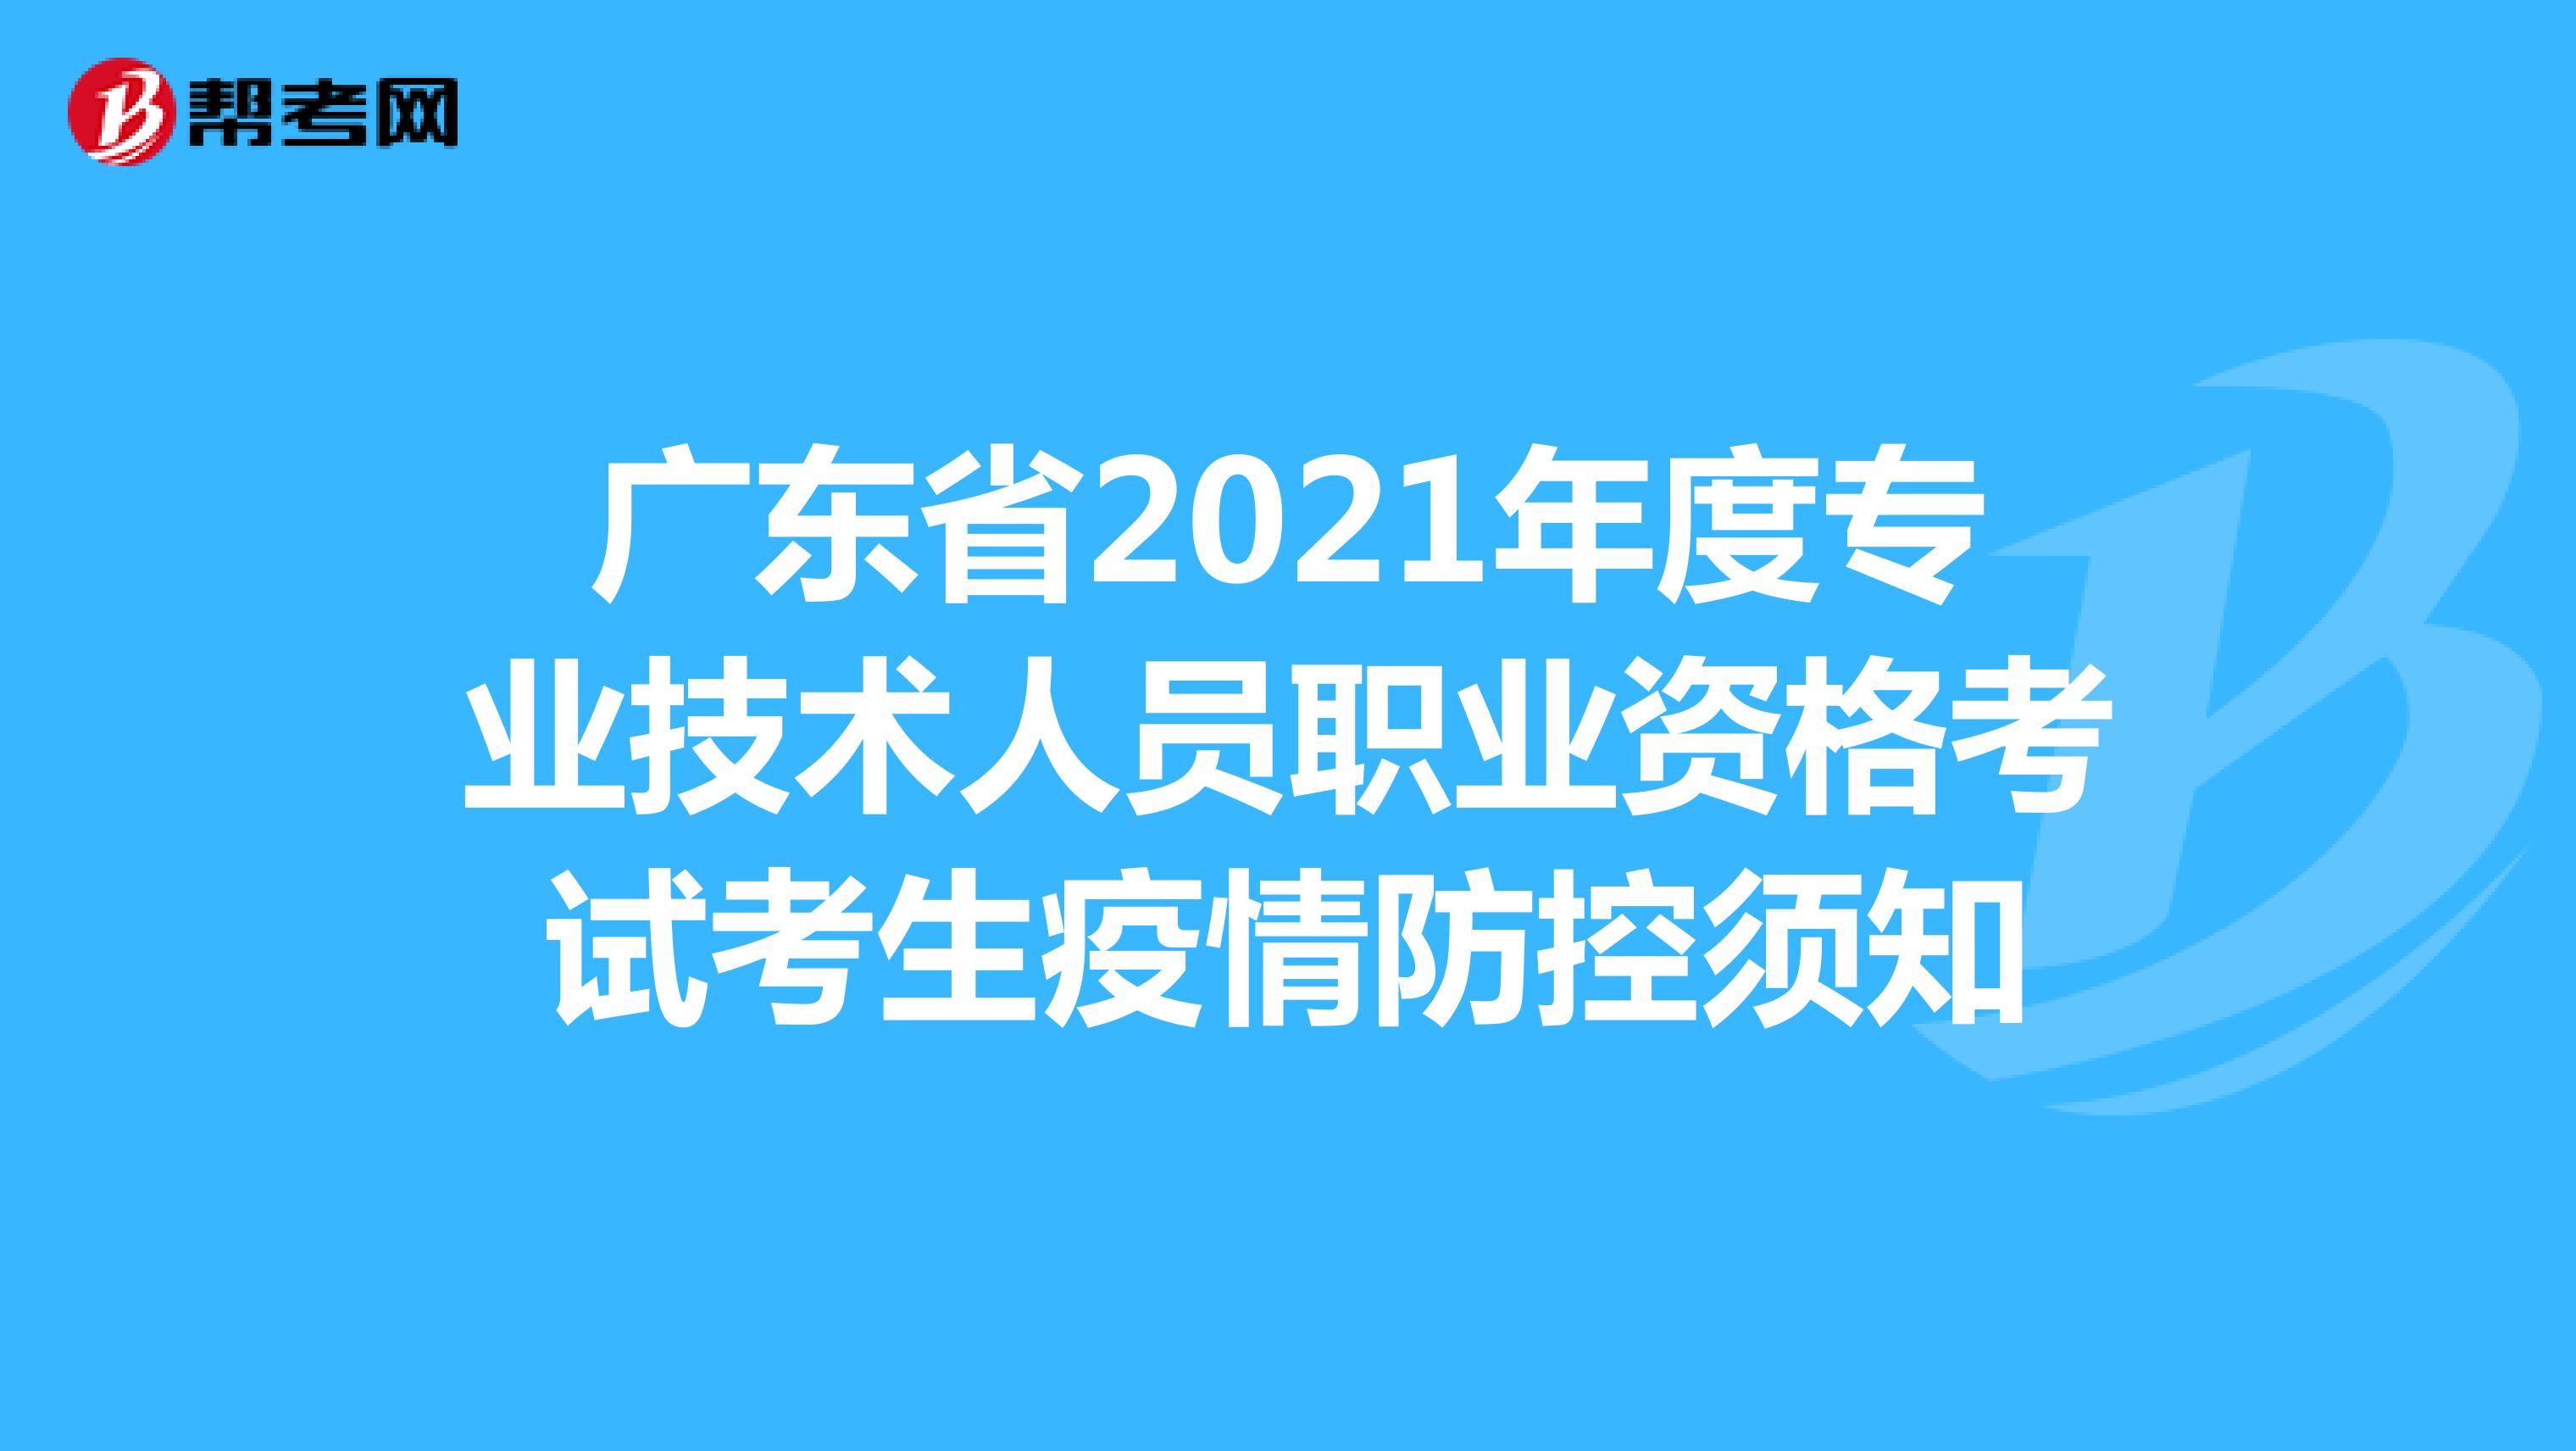 广东省2021年度专业技术人员职业资格考试考生疫情防控须知